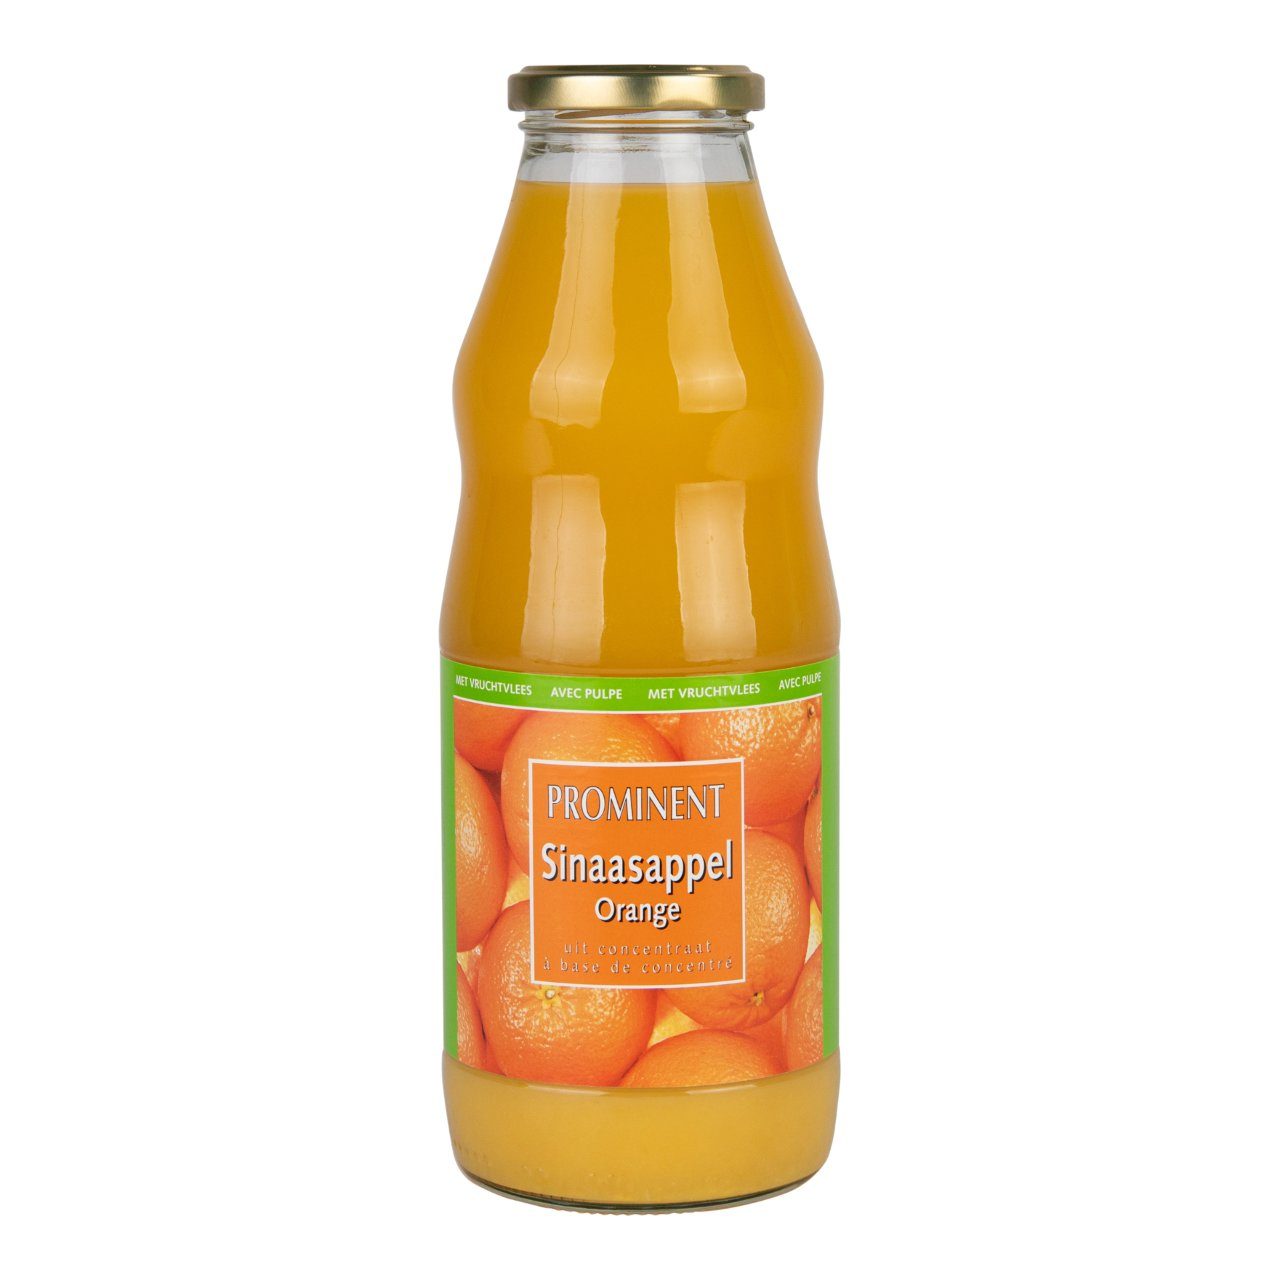 Sinaasappelsap met vruchtvlees